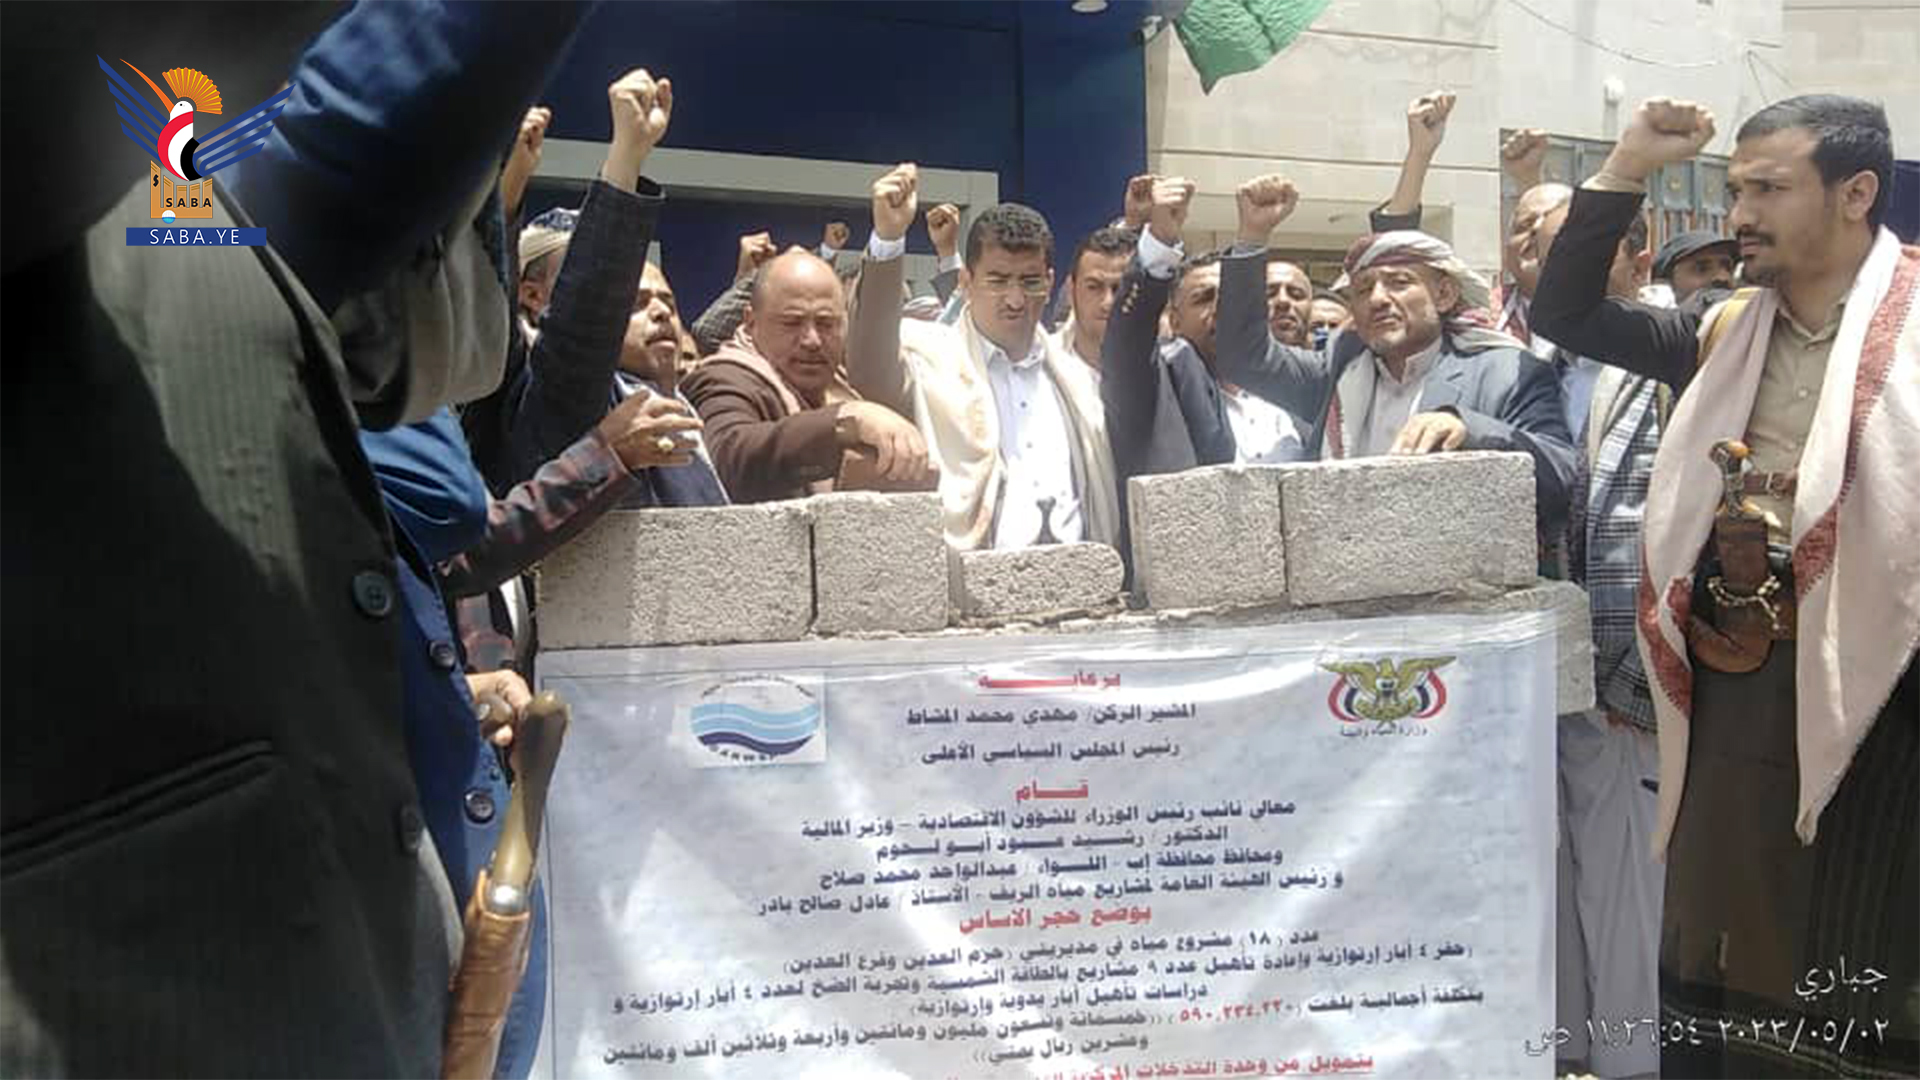 دکتر أبولحوم سنگ بنای پروژه های خدماتی را در حزم العدین در استان إب می گذارد